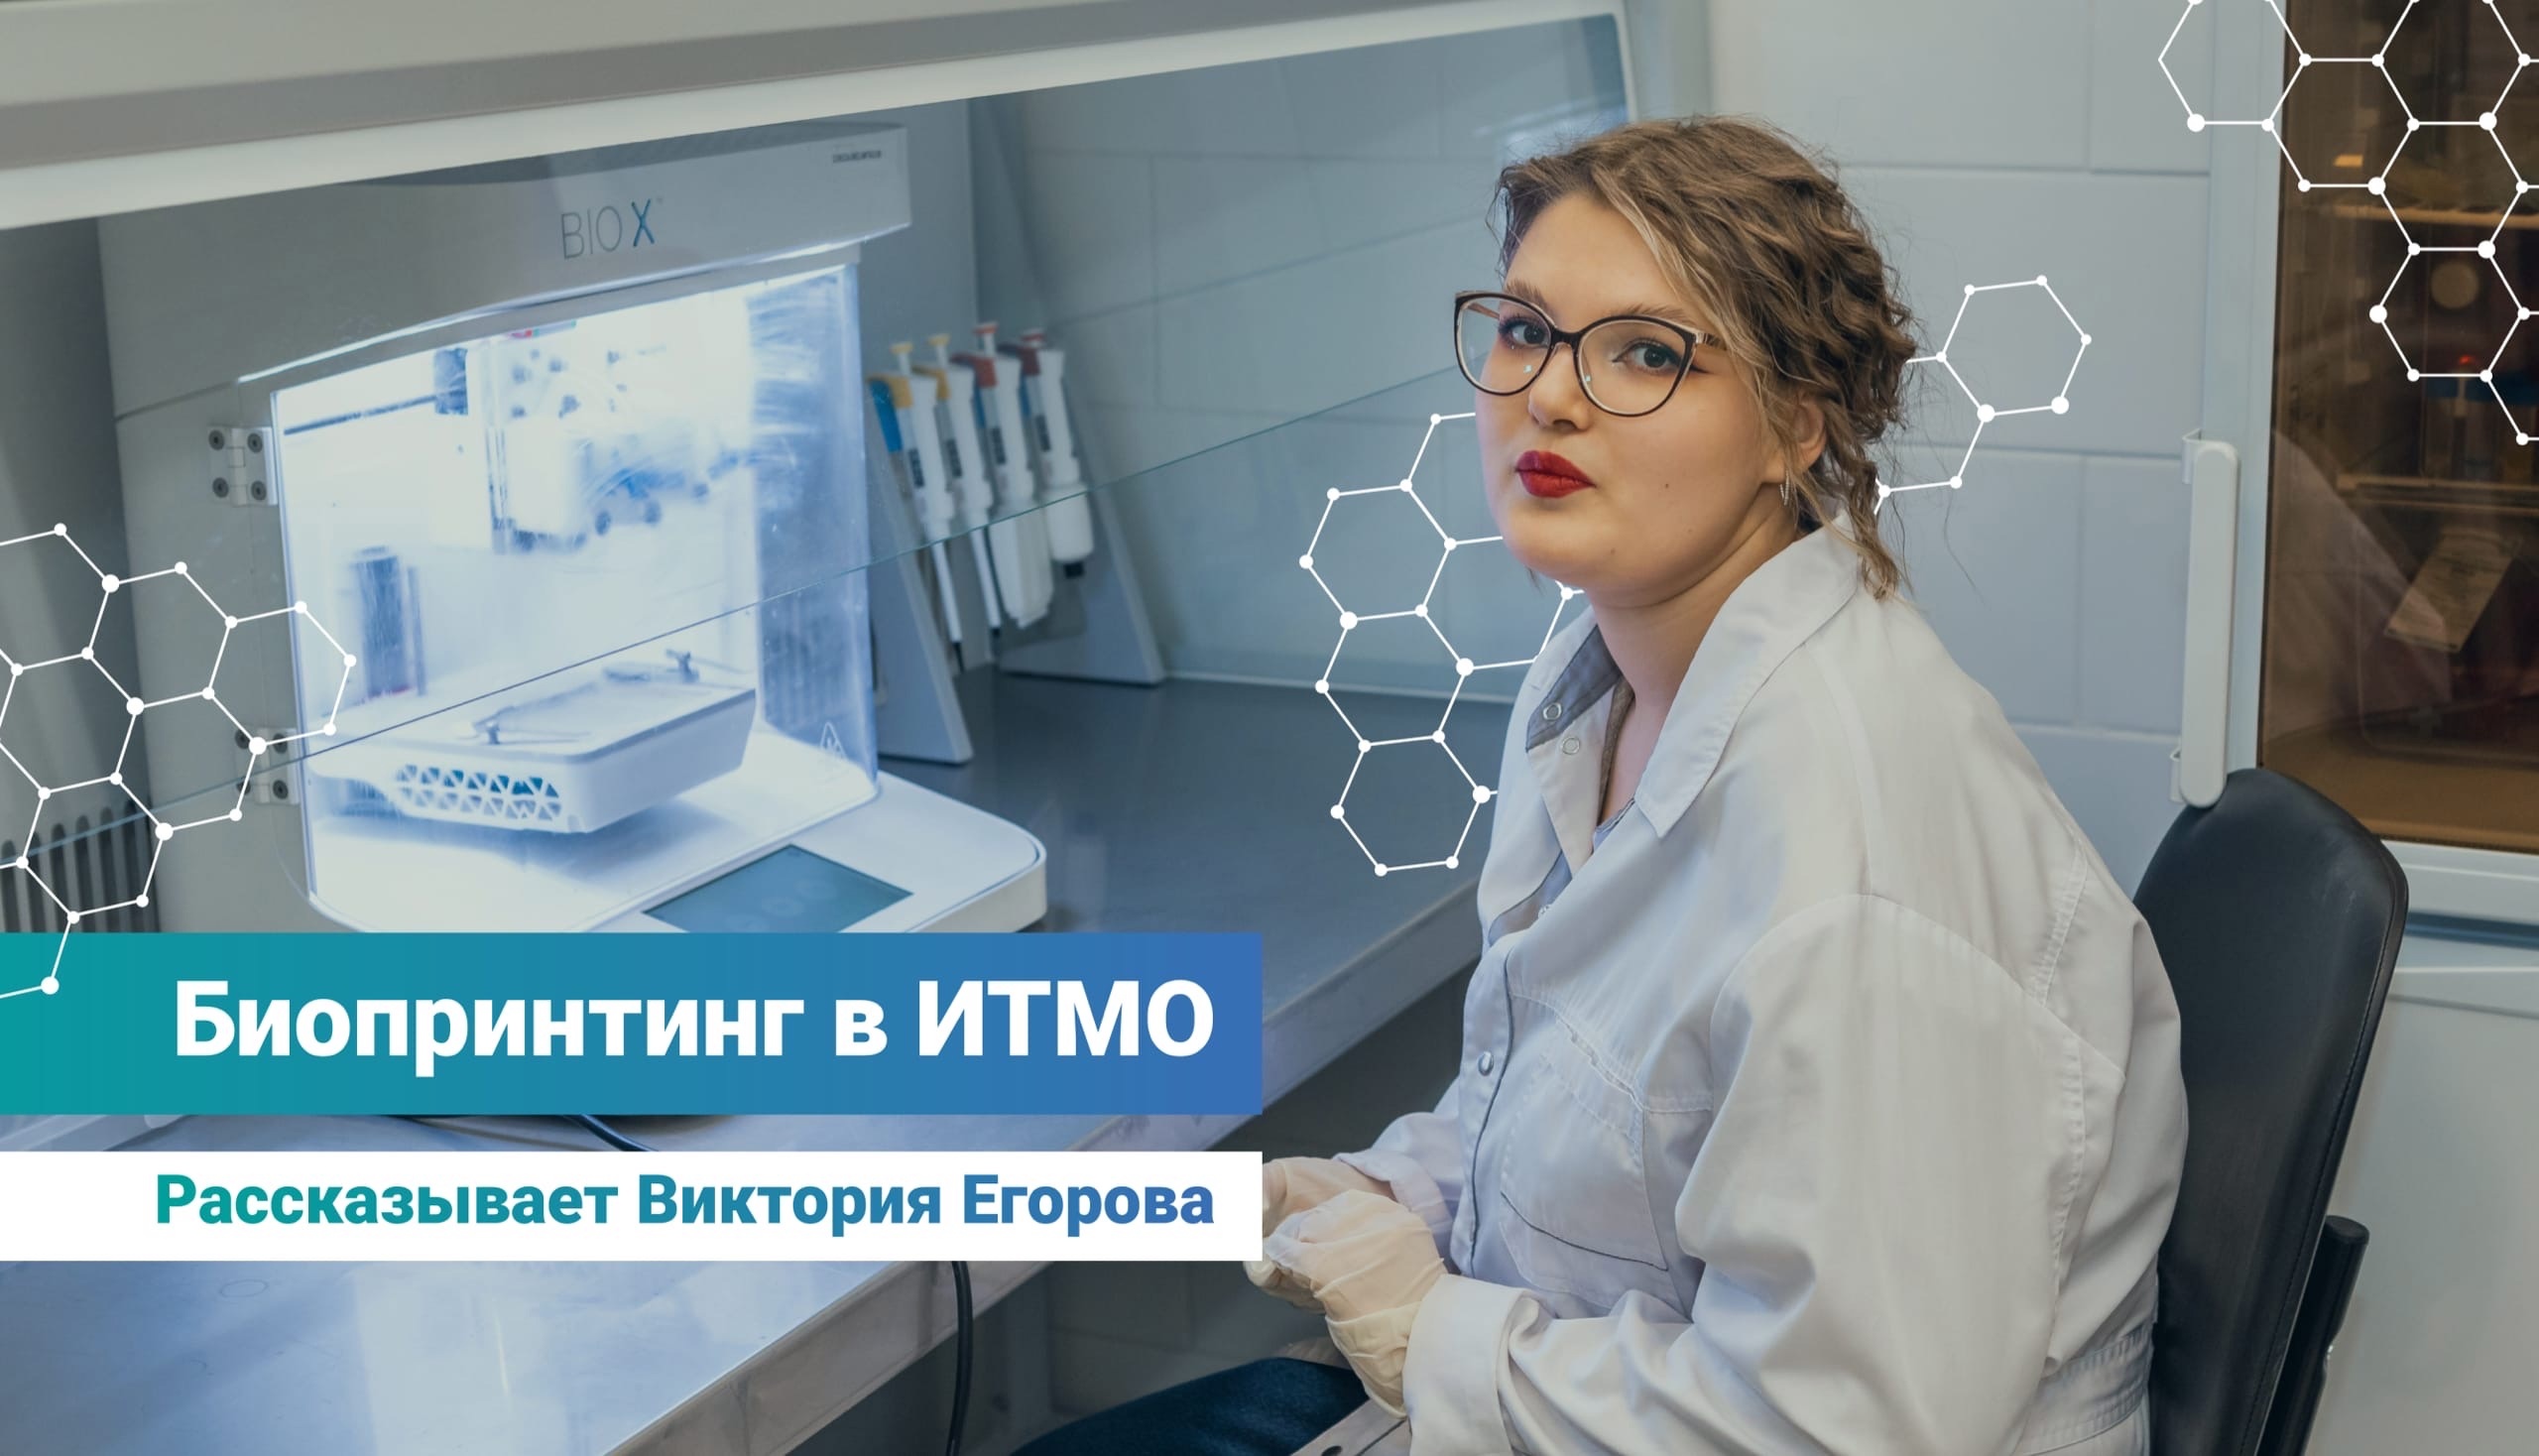 Виктория Егорова рассказывает про биопринтинг: что это, как заниматься им сейчас и какое будущее ждёт это научное направление